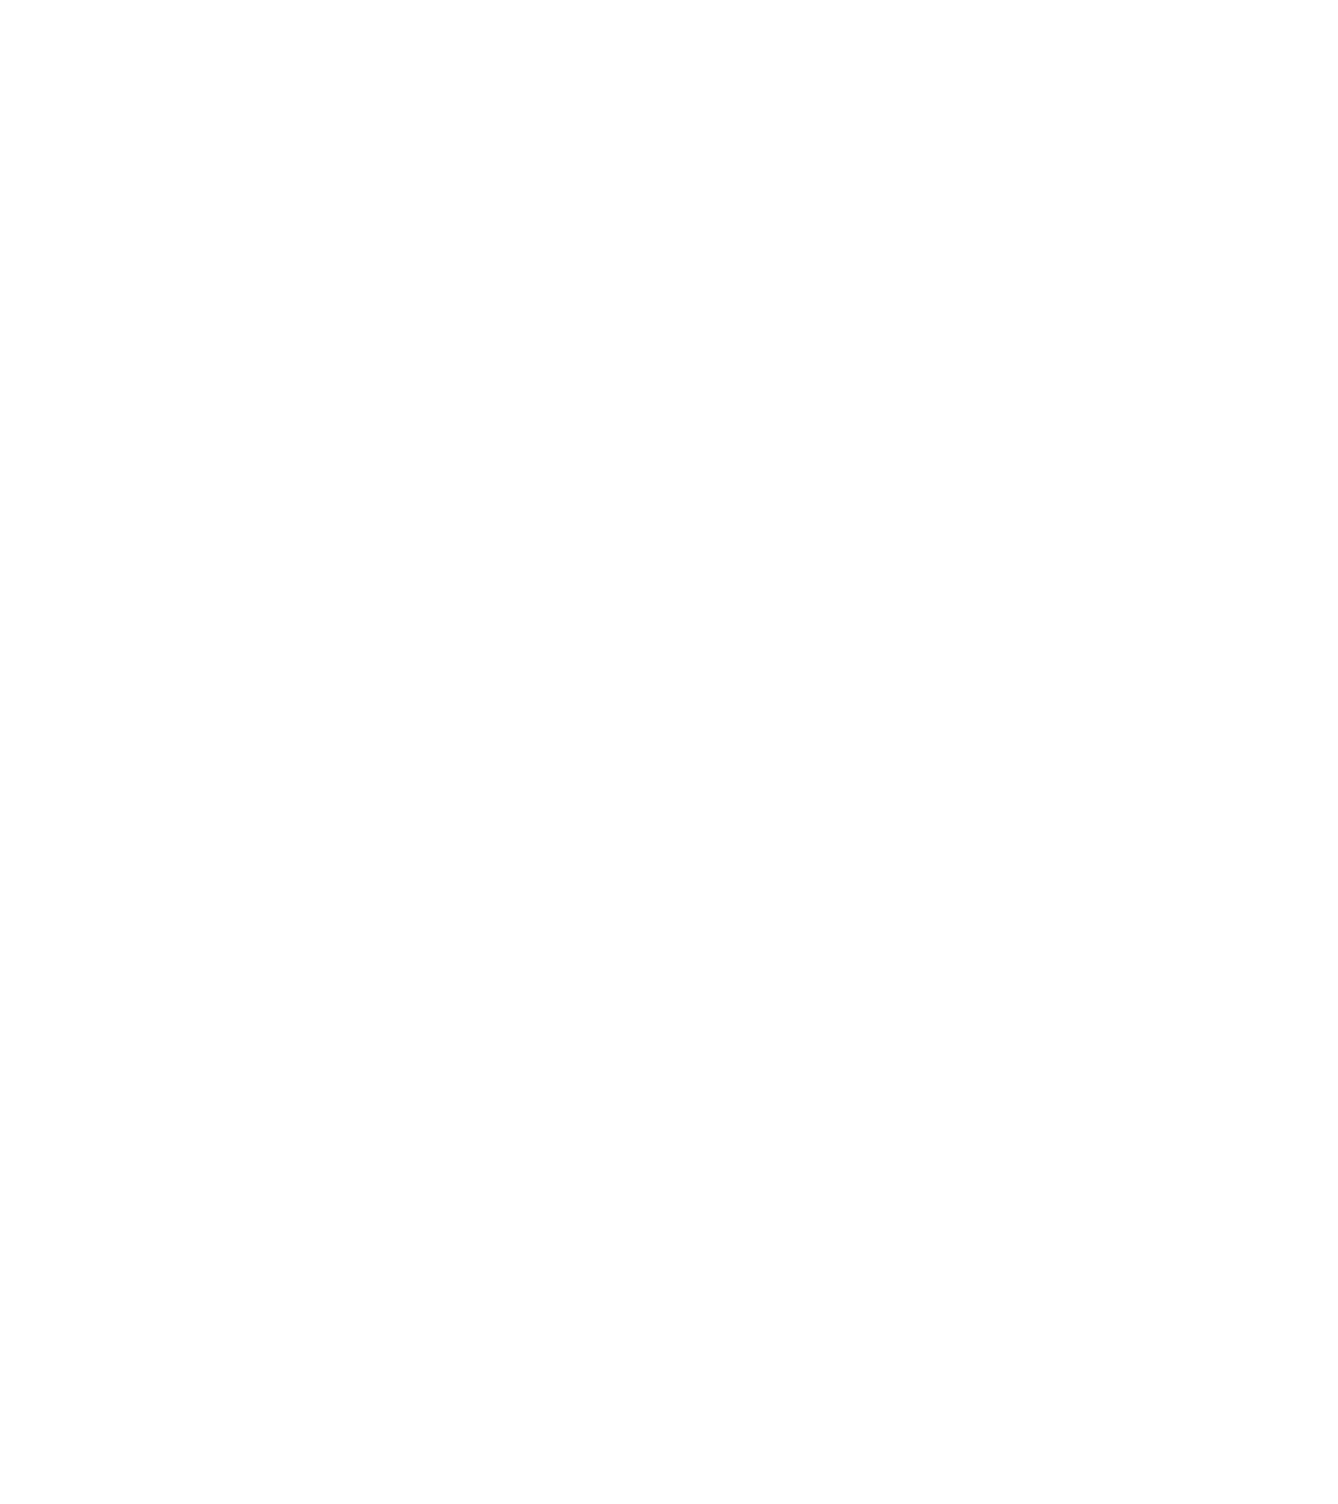 Mobilicom logo pour fonds sombres (PNG transparent)